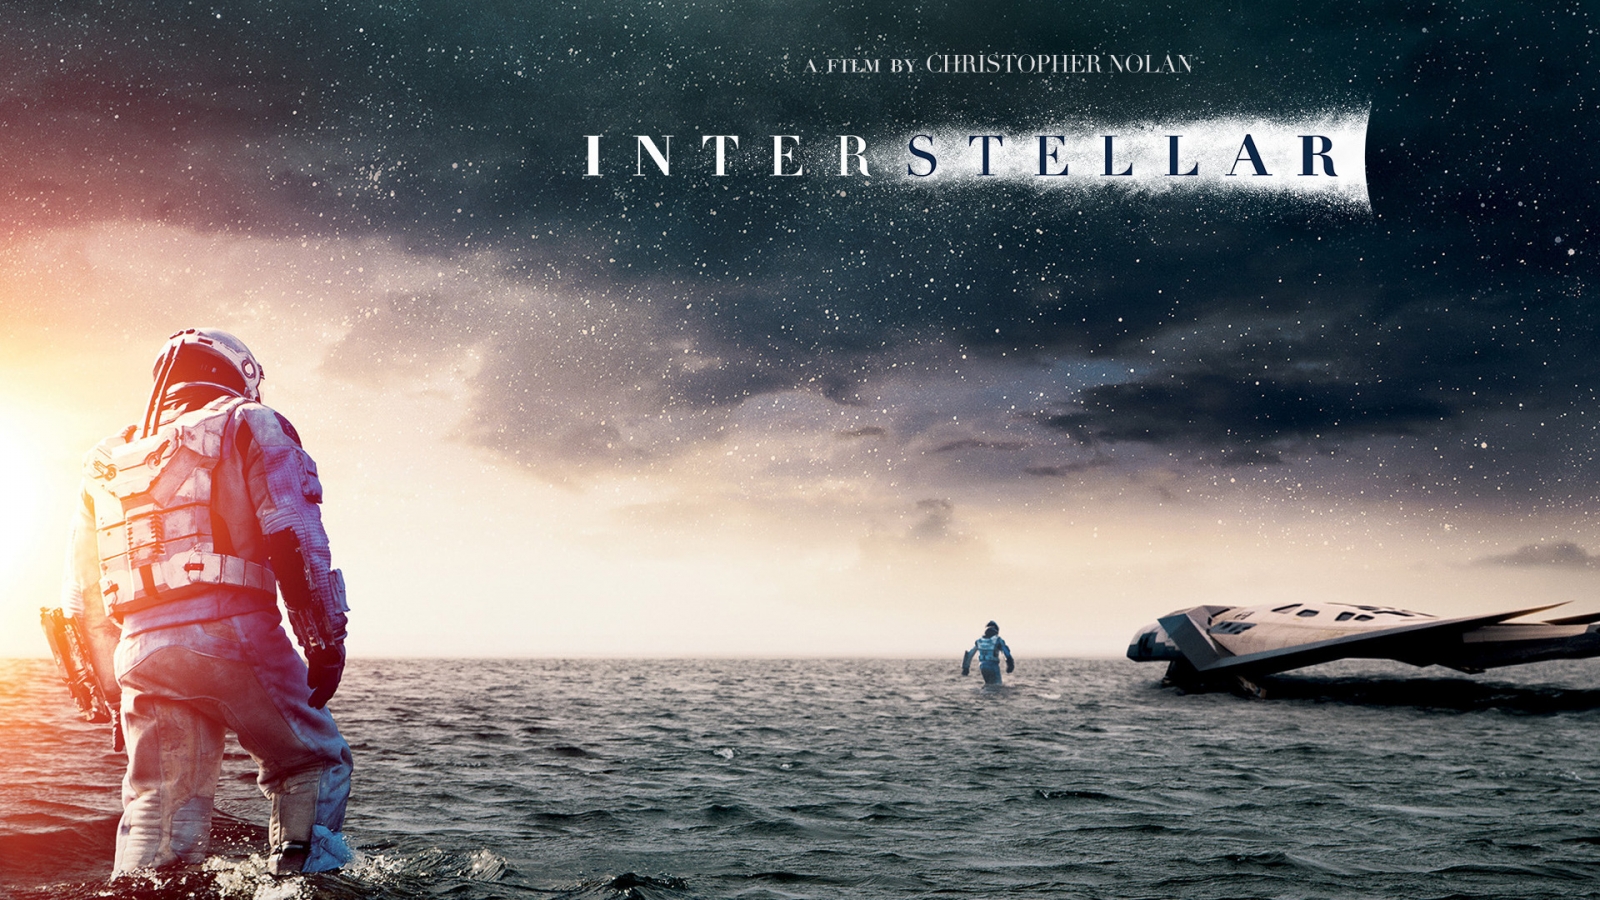 Interstellar 2014 Movie for 1600 x 900 HDTV resolution